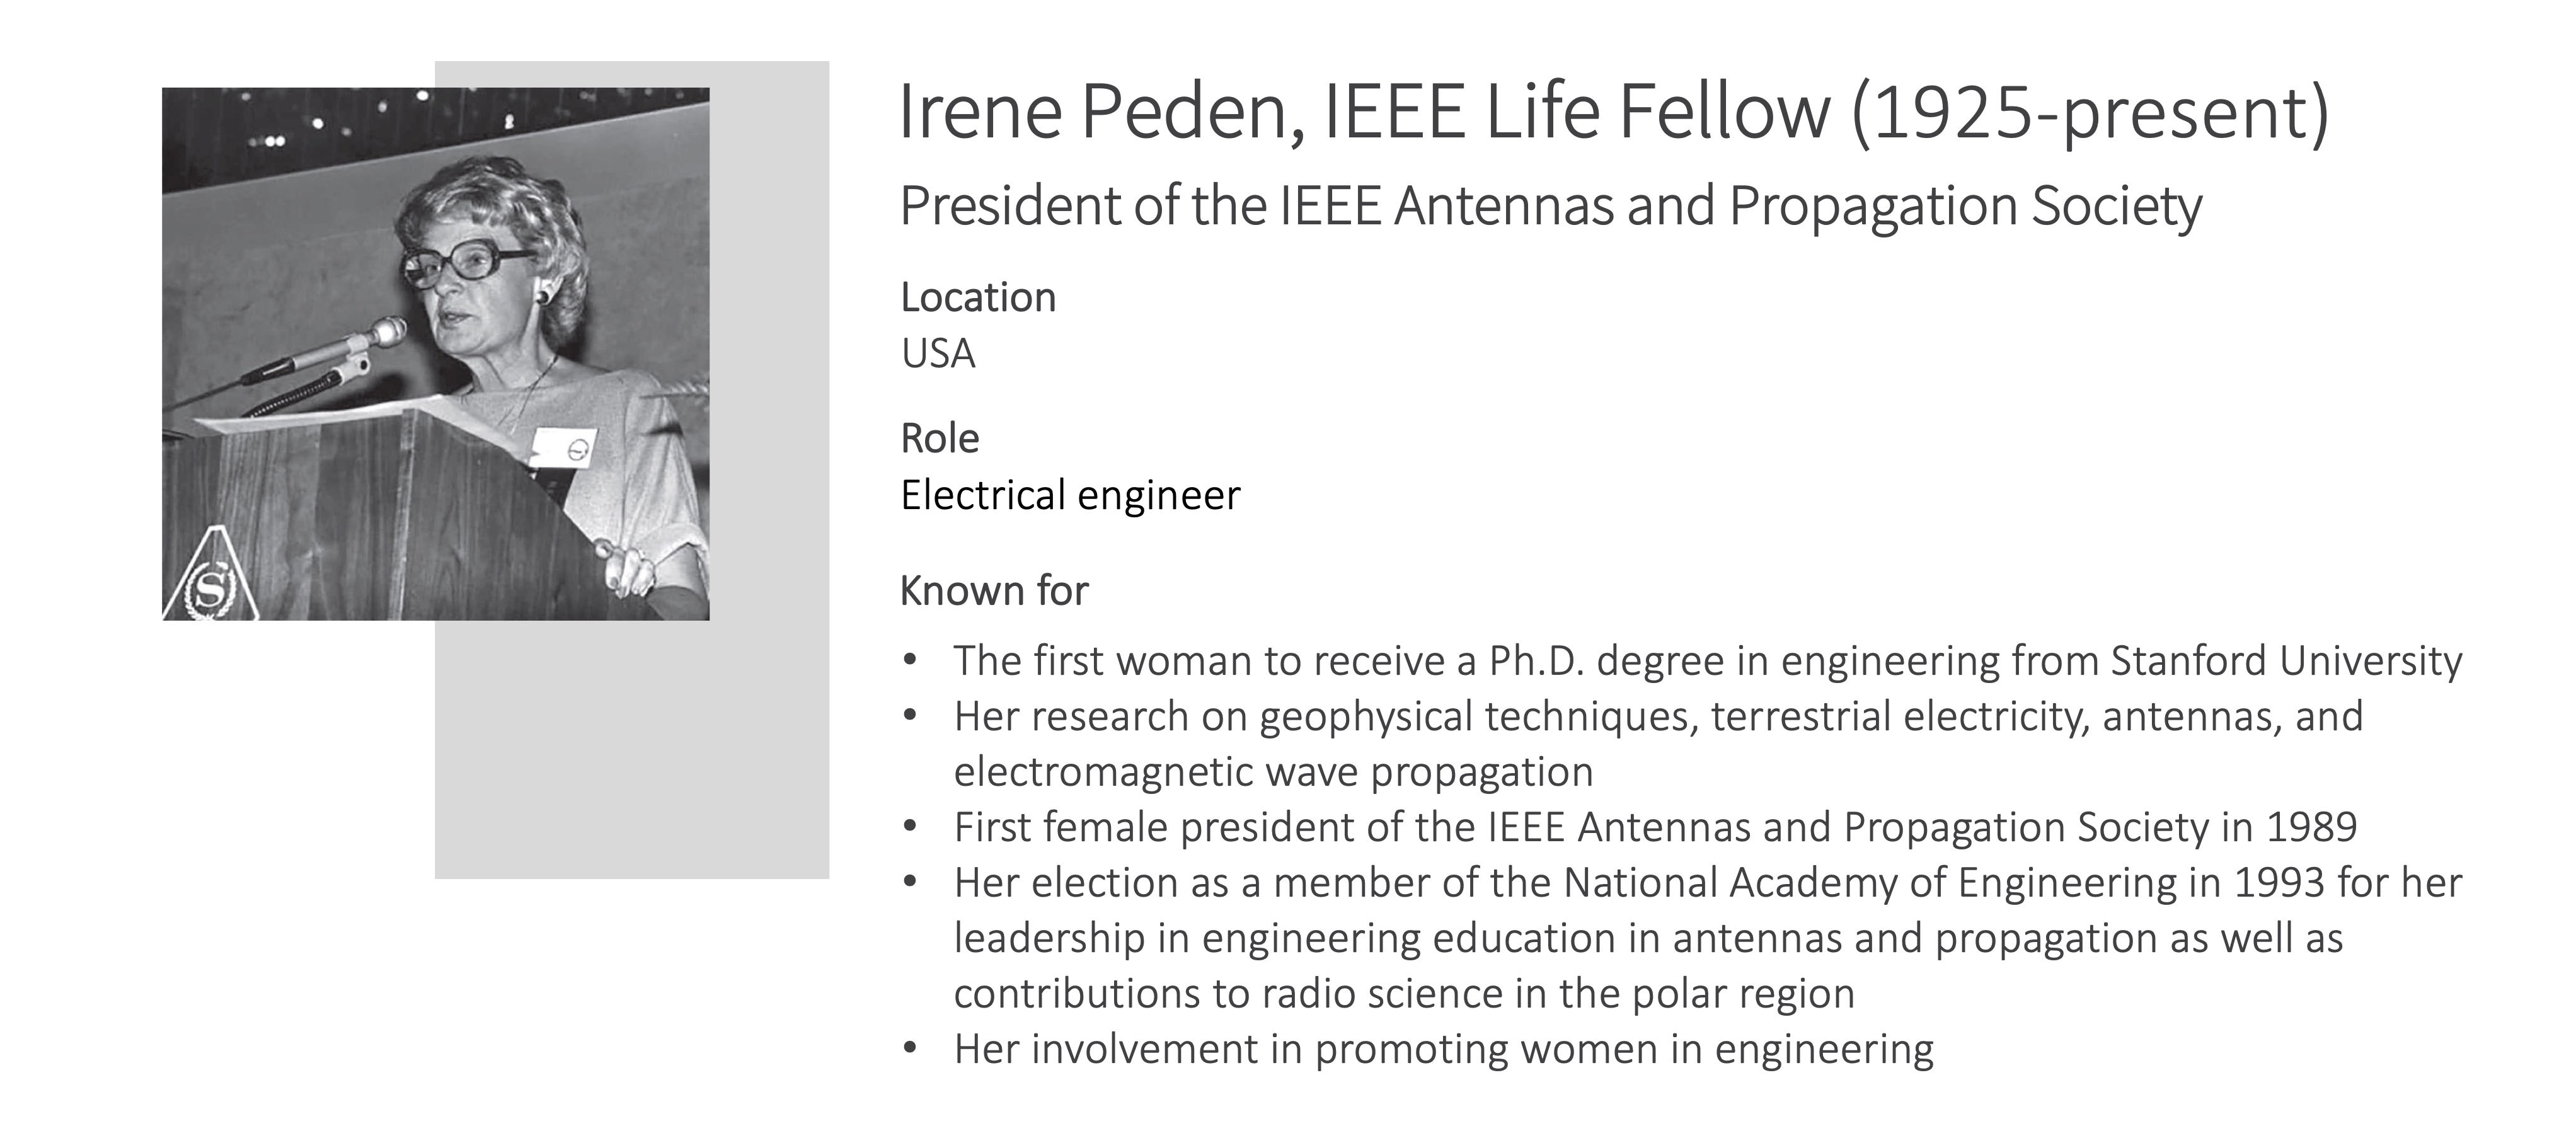 Irene Peden